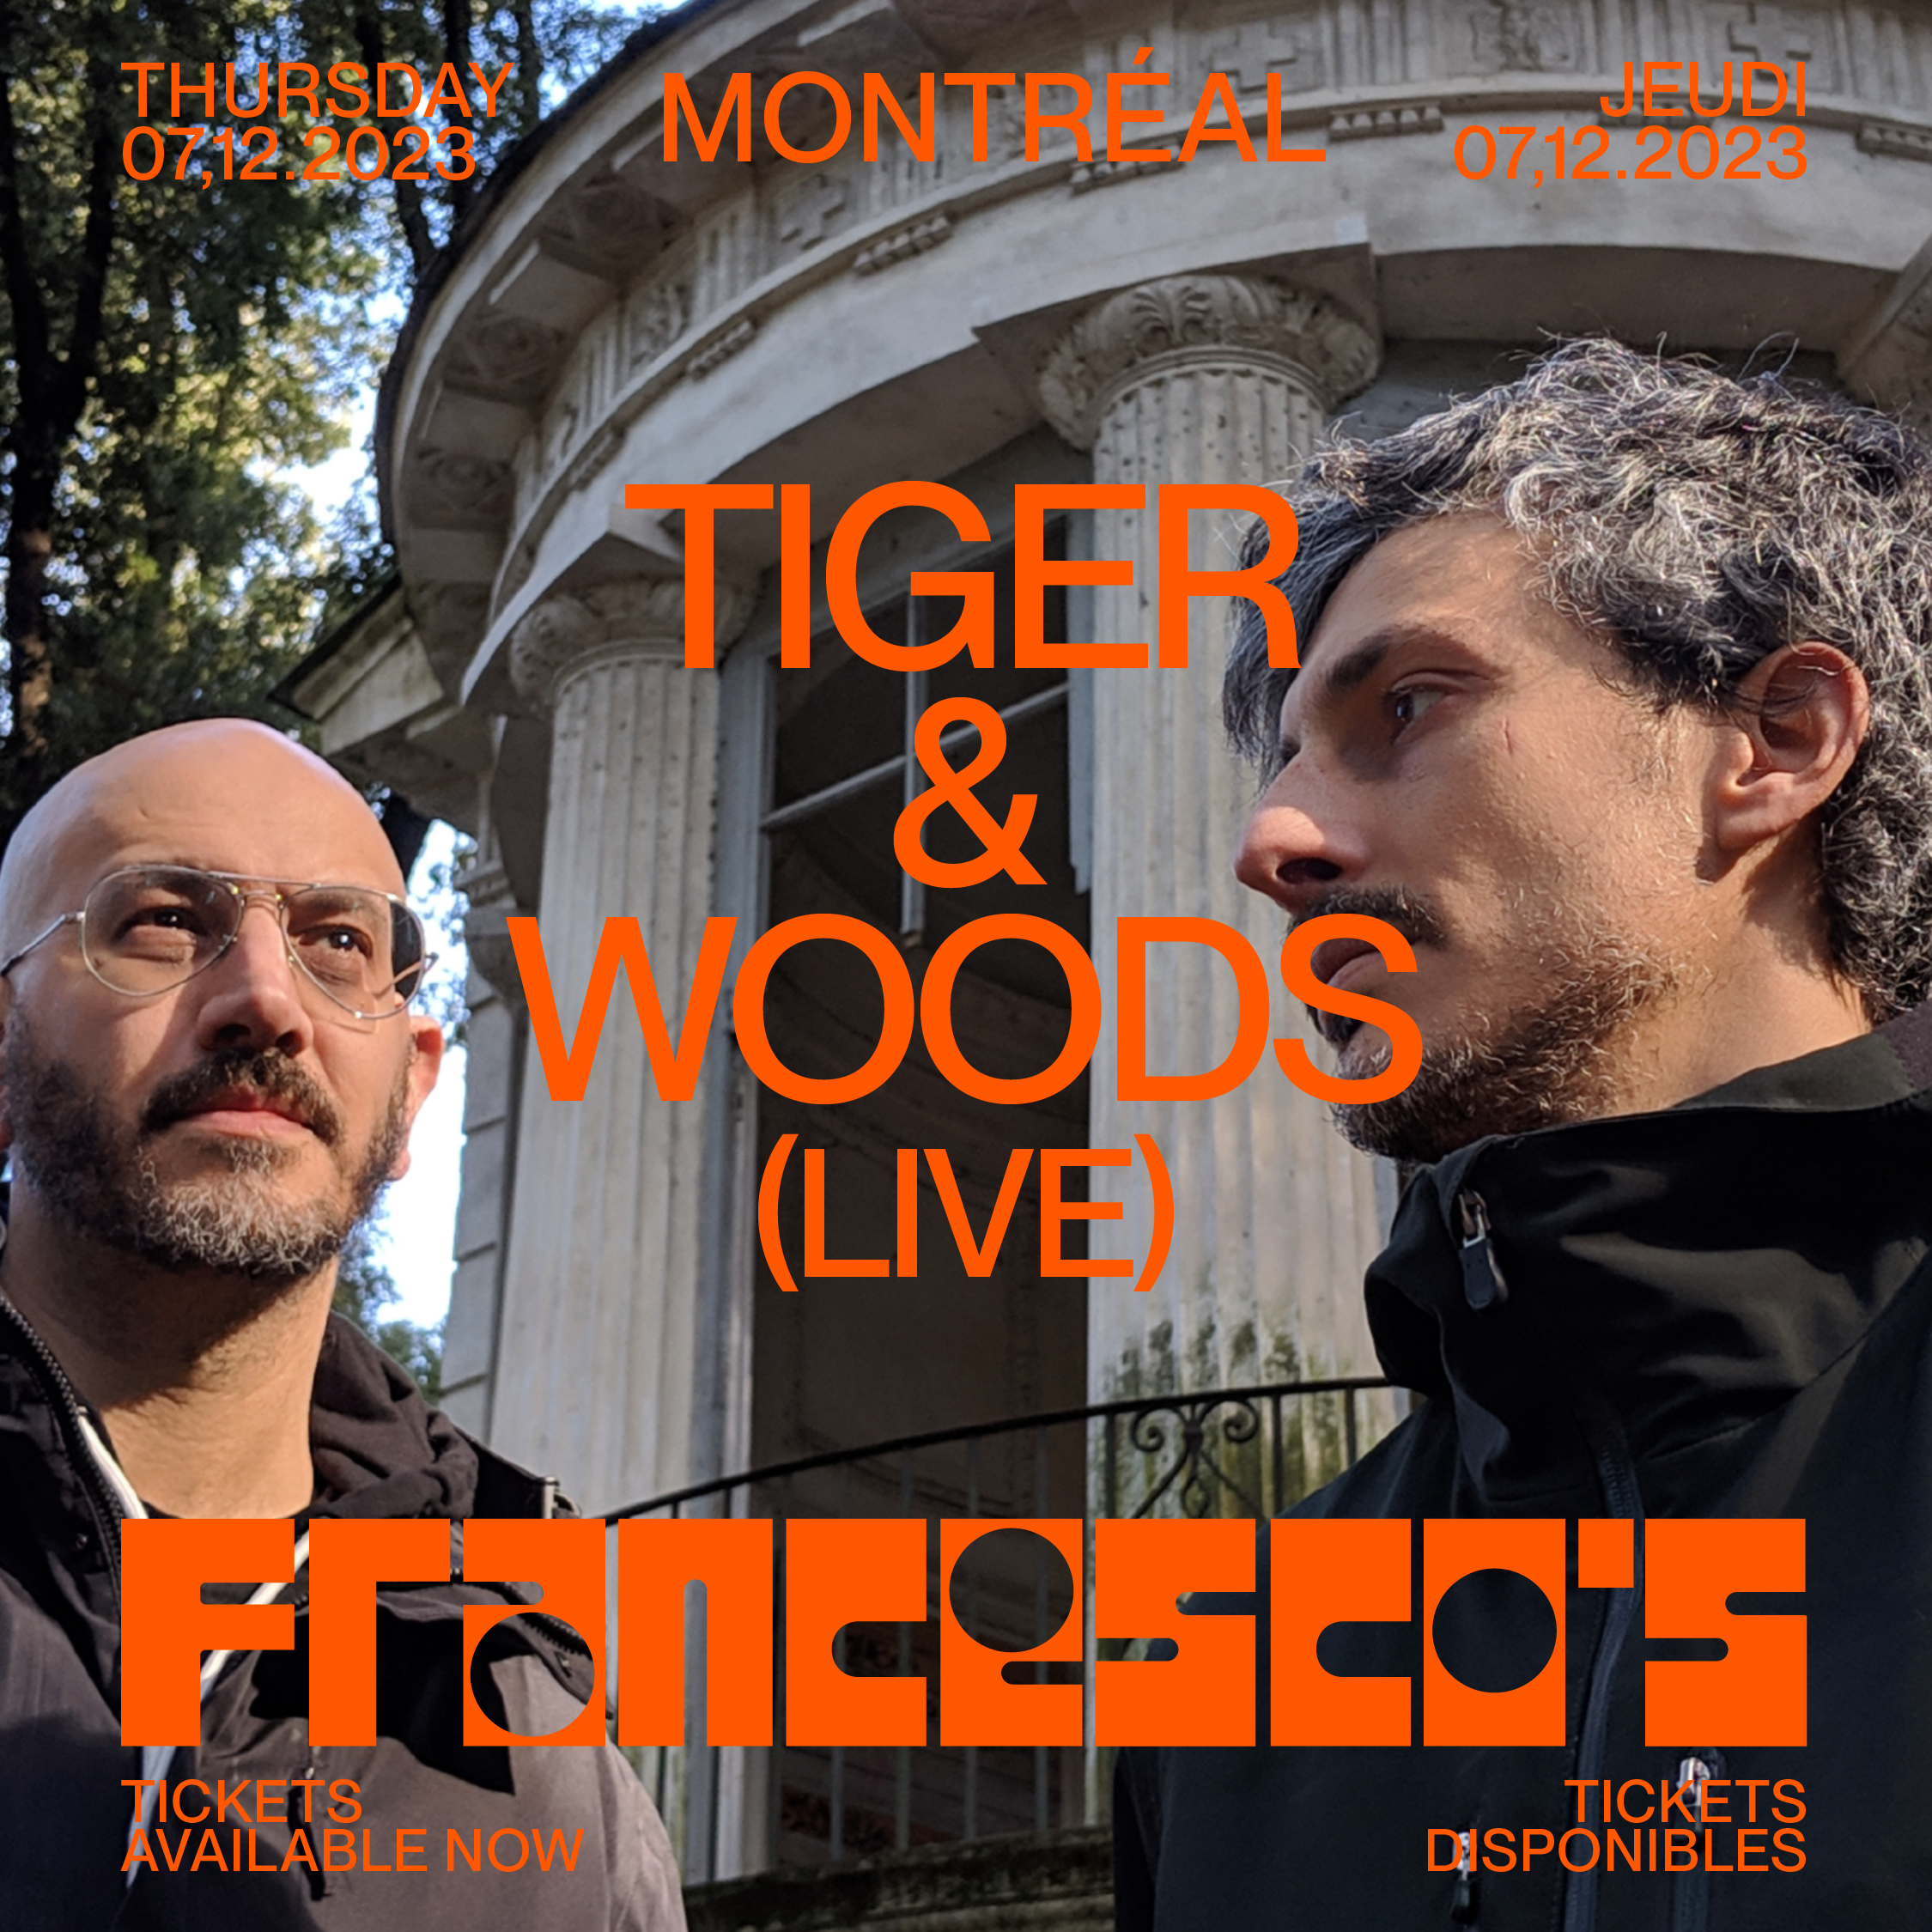 Tiger & Woods (Live Set) in Montréal - Página trasera